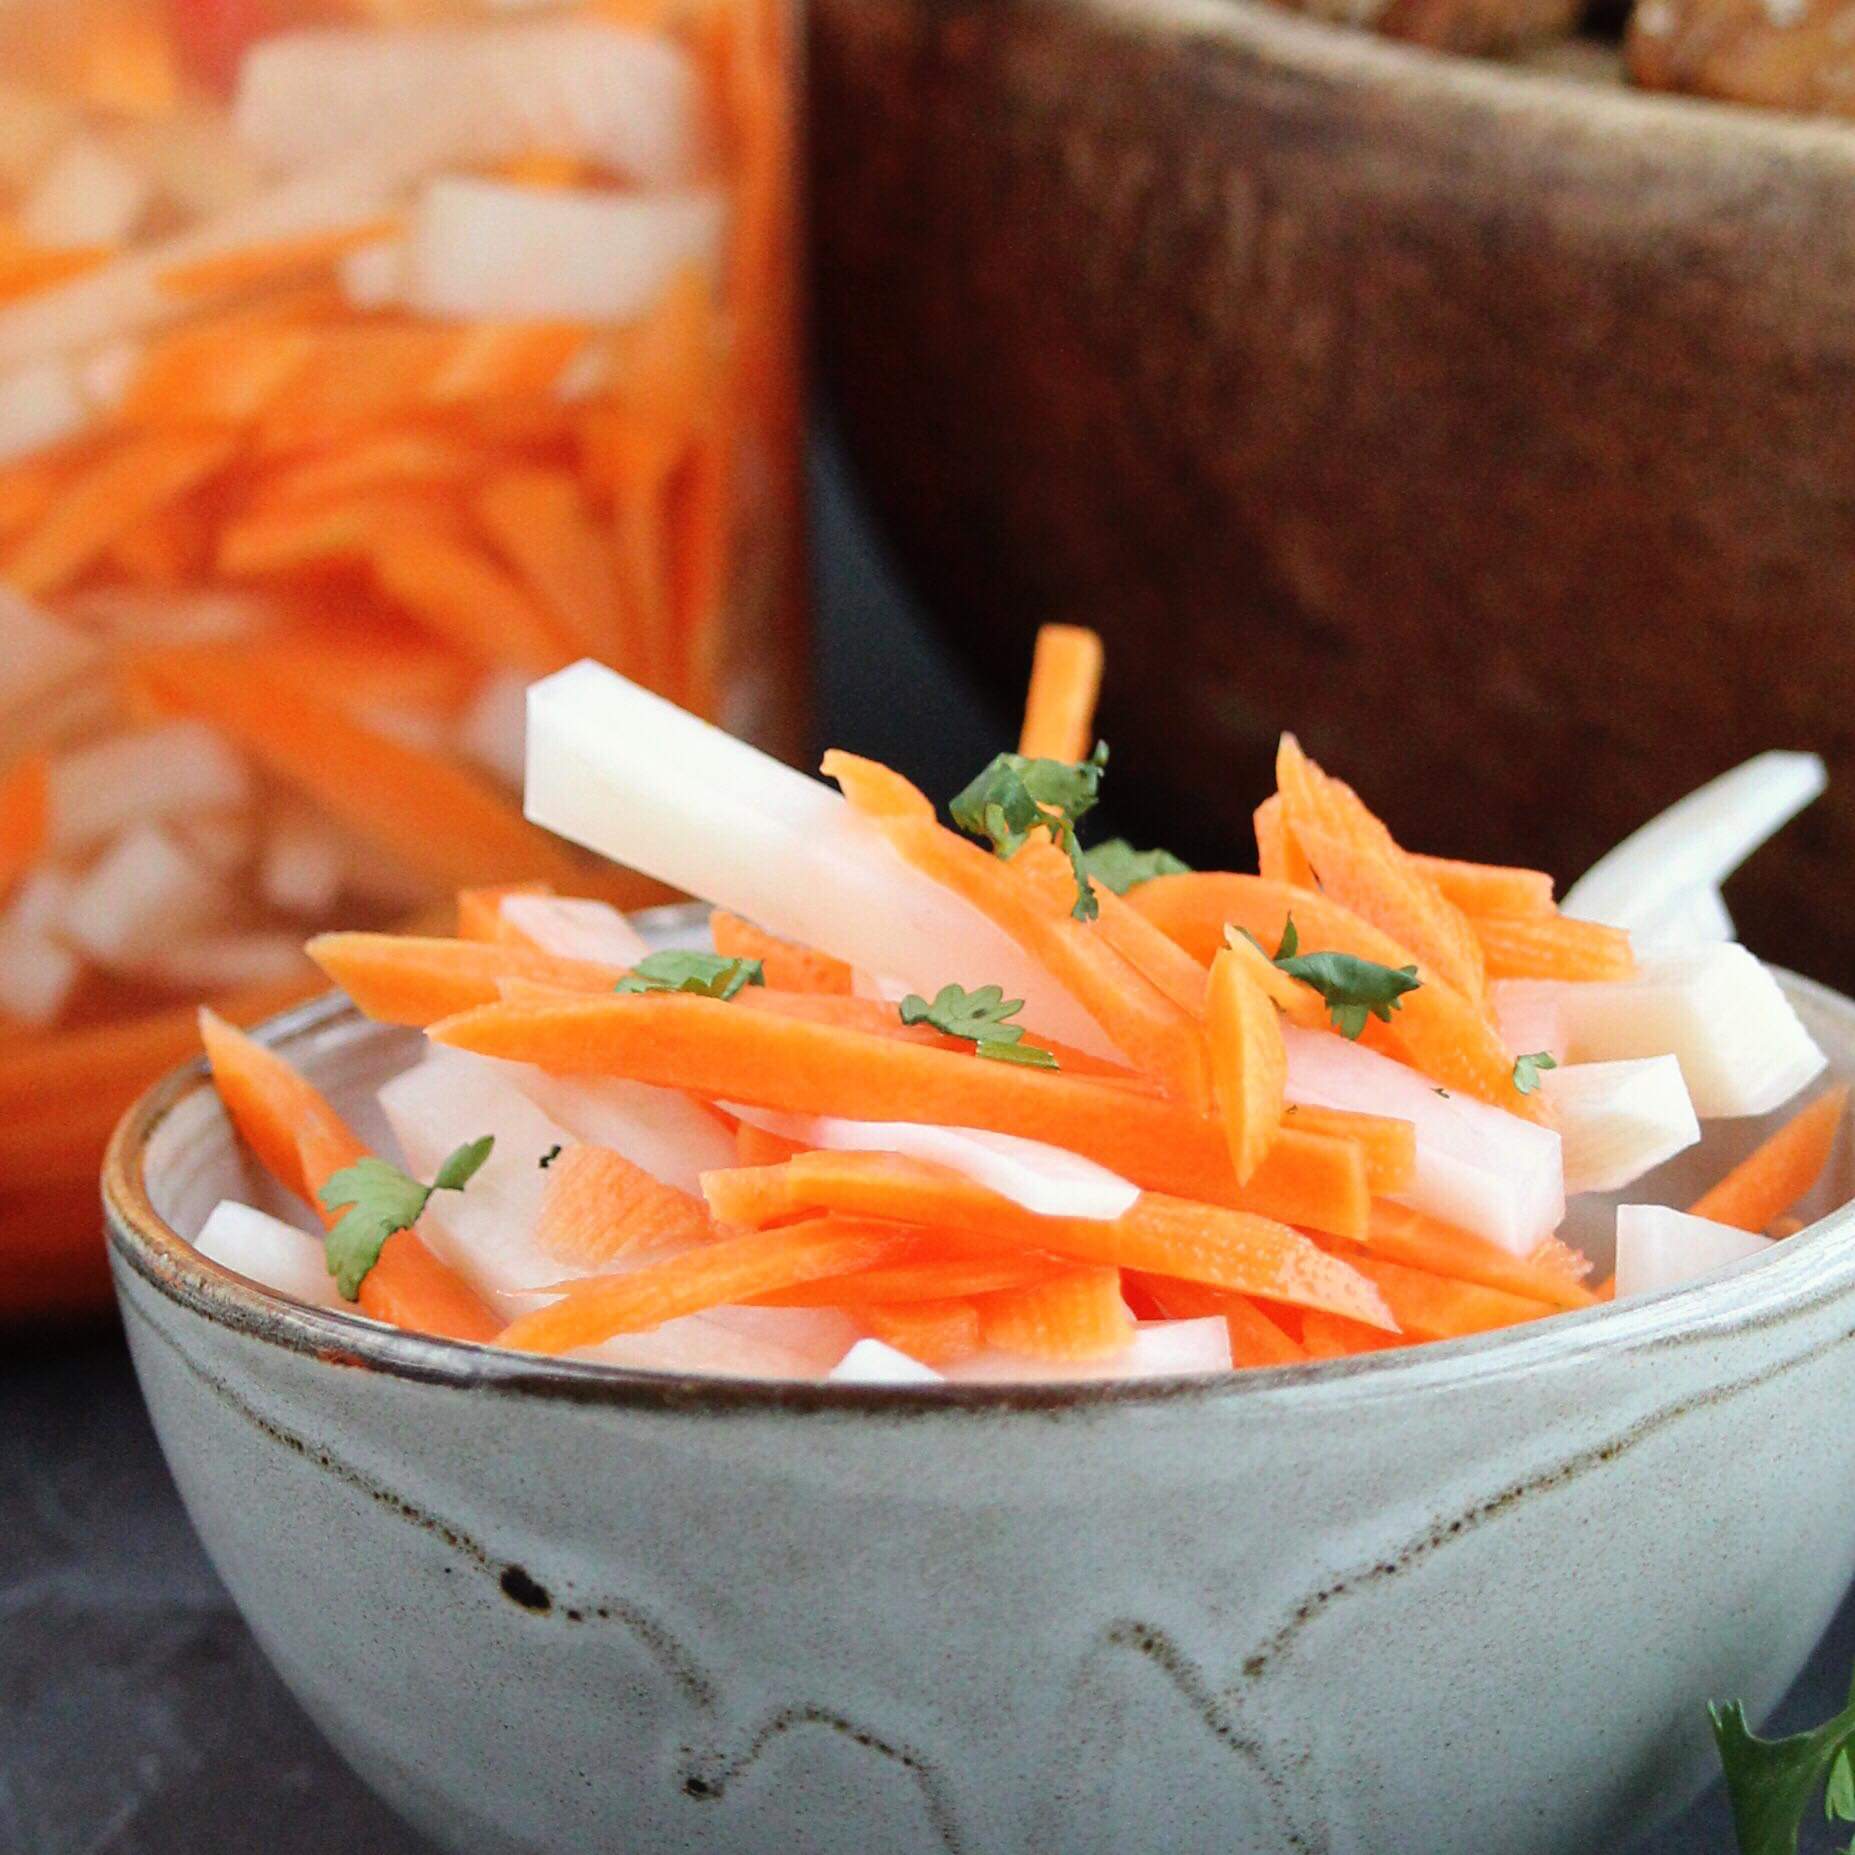 Vietnamese Pickled Daikon Radish and Carrots Recipe | Allrecipes